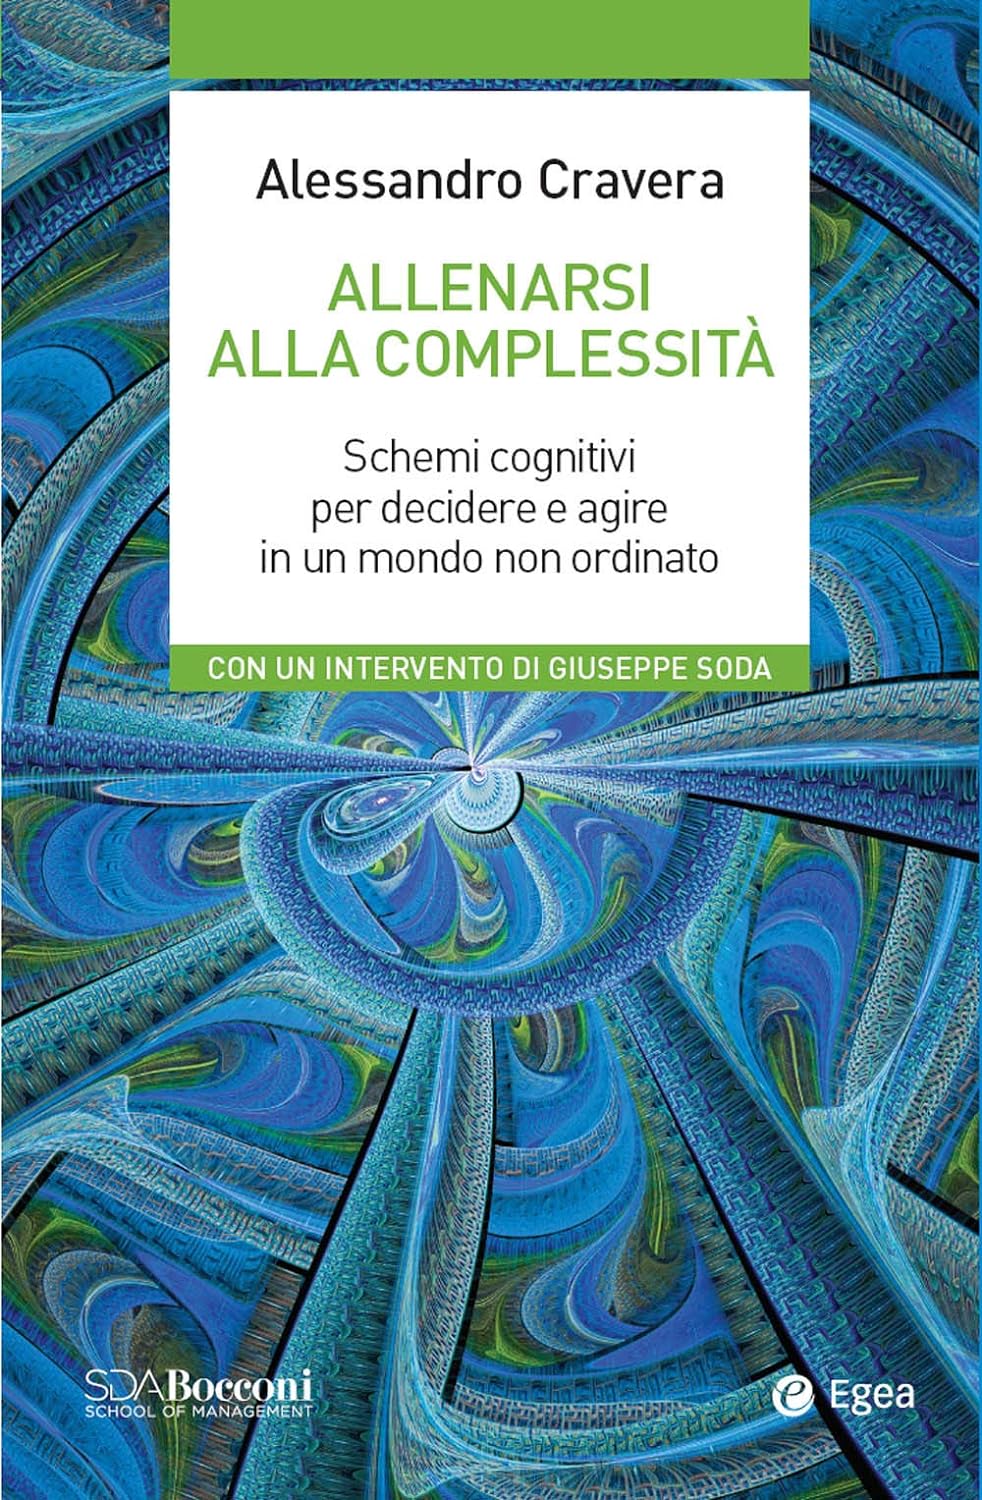 Alessandro Cravera: Allenarsi alla complessità (Italiano language, Egea)